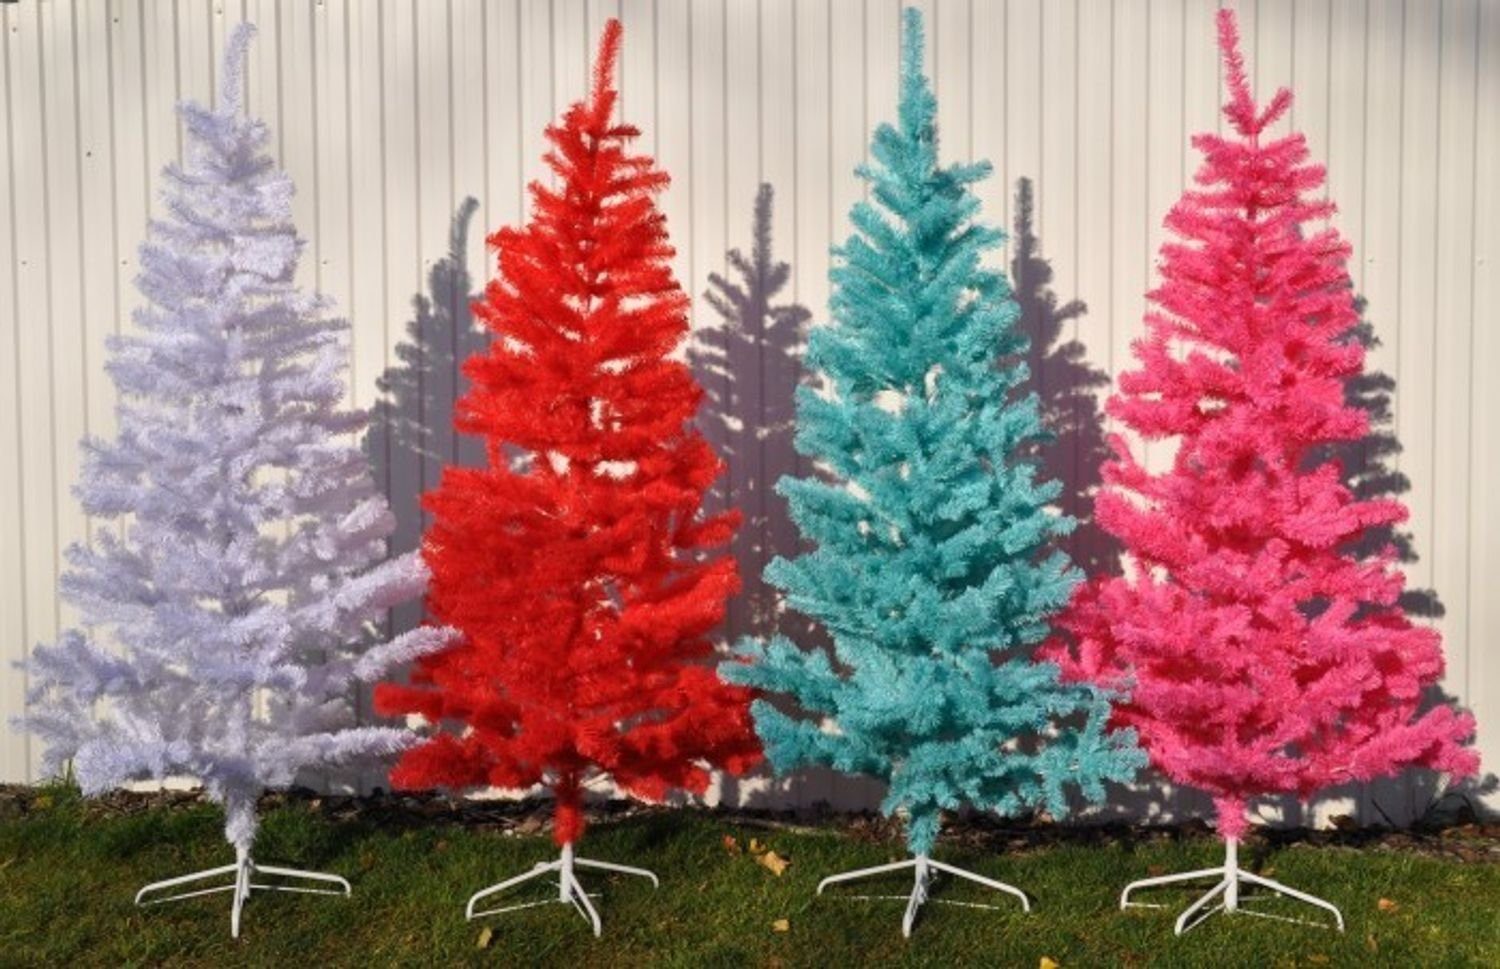 BURI Künstlicher 210cm Weihnachtsbaum weiß Weihnachtsbaum künstlicher